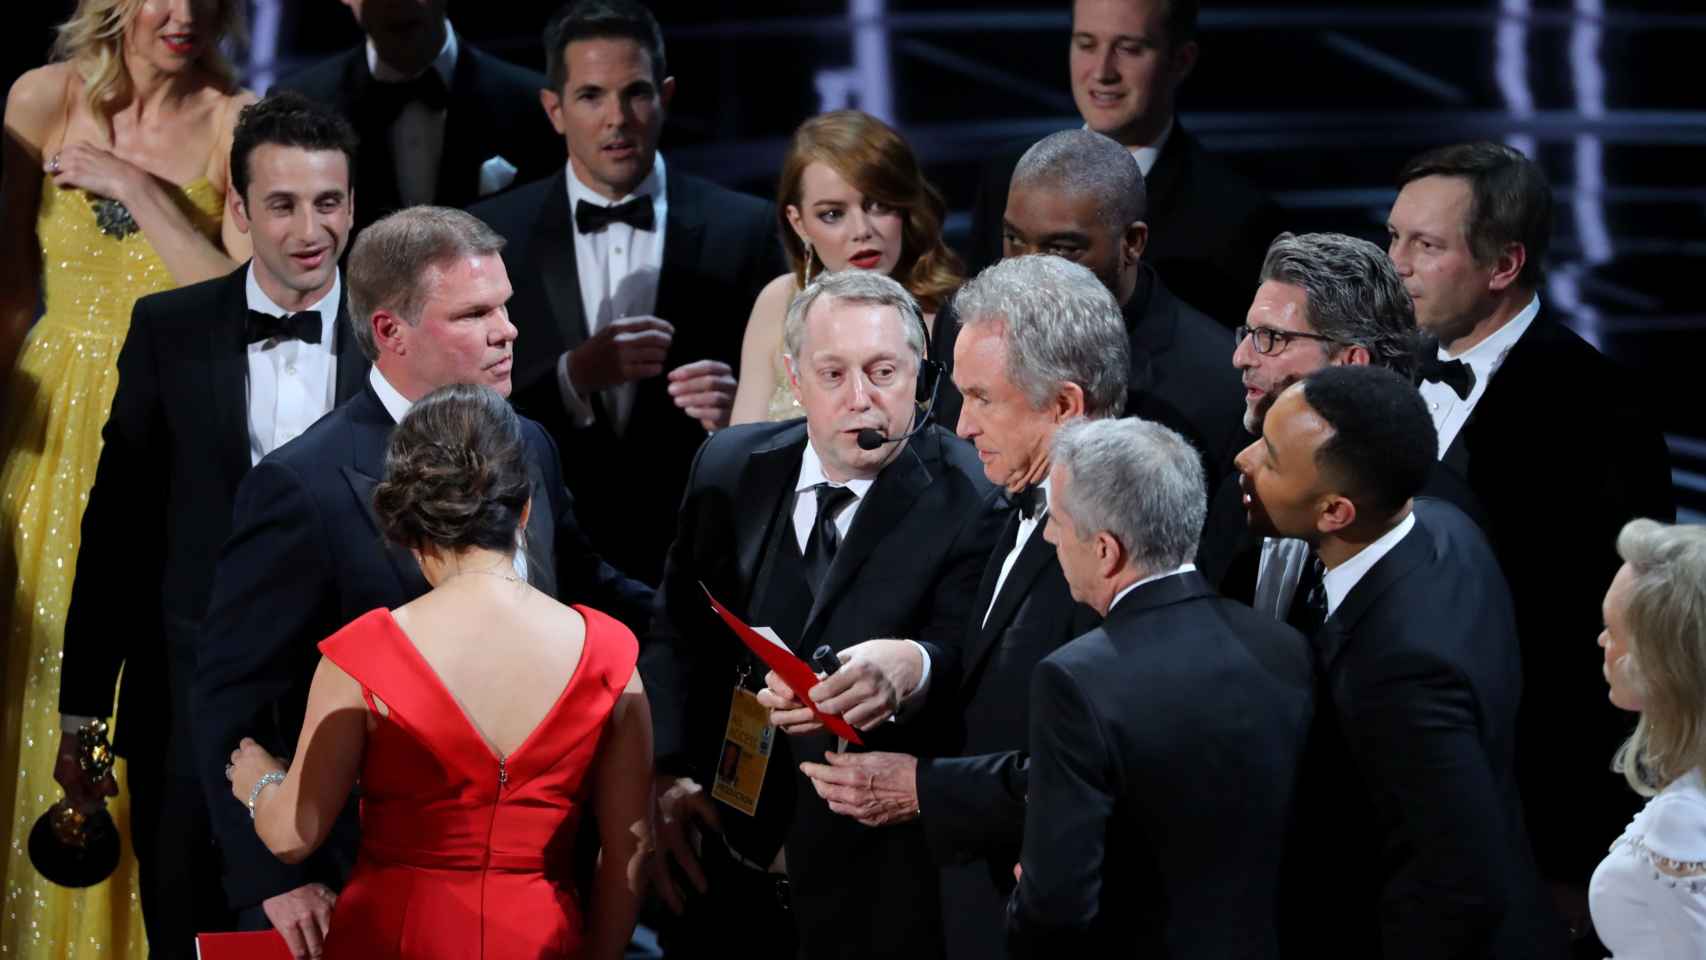 El momento de confusión después de que Warren Beatty se equivocara y diera el Oscar a la mejor película a 'La la land'... cuando había ganado 'Moonlight'